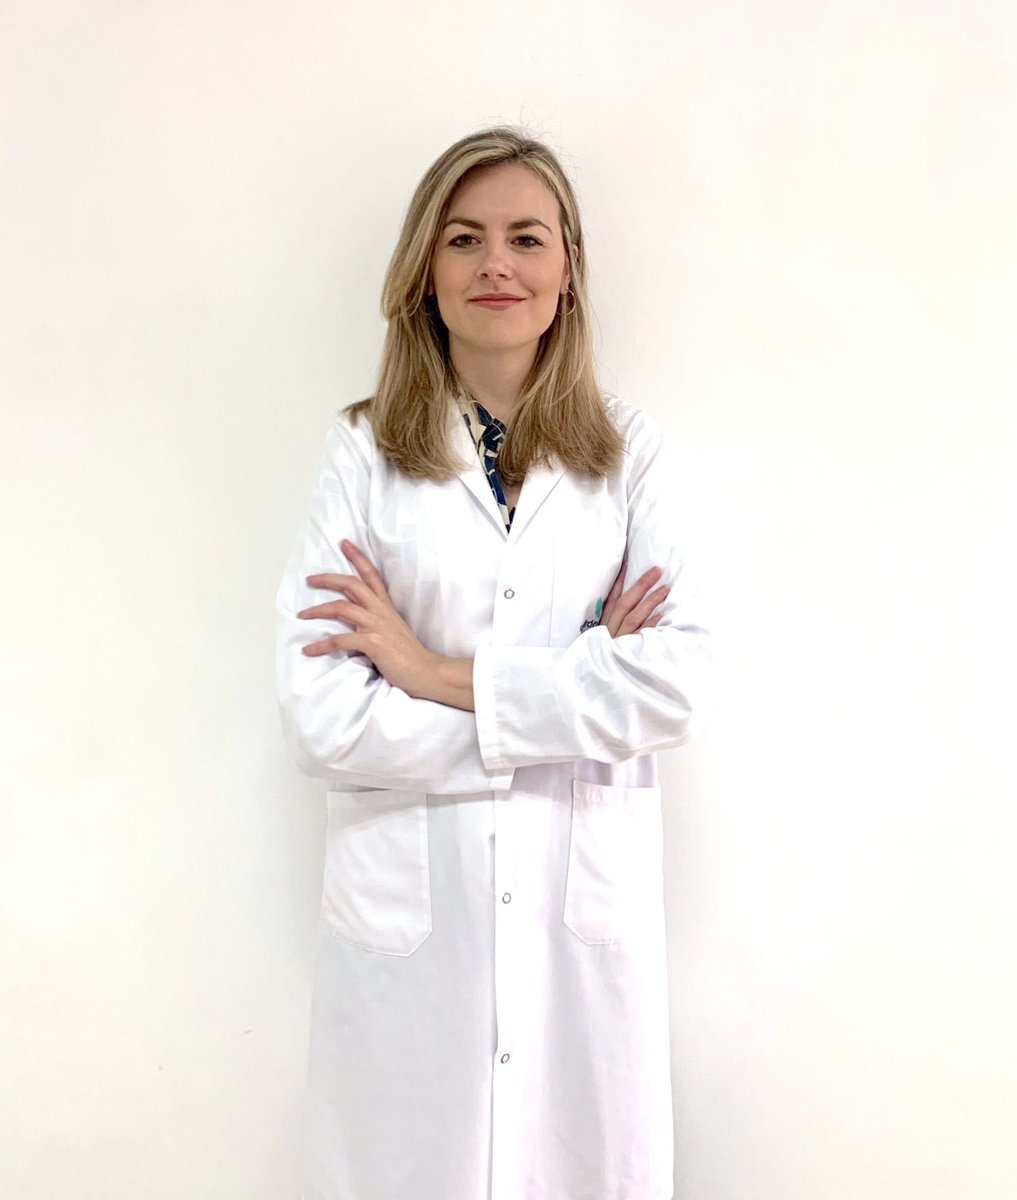 Es un orgullo anunciar la incorporación de la Dra. Olga Durán @odbobin a nuestro equipo!! Con una impresionante trayectoria académica y profesional, estamos seguros de que su experiencia enriquecerá aún más nuestro equipo! ¡Bienvenida doctora!! uicardiologia.com/profile/dra-ol…